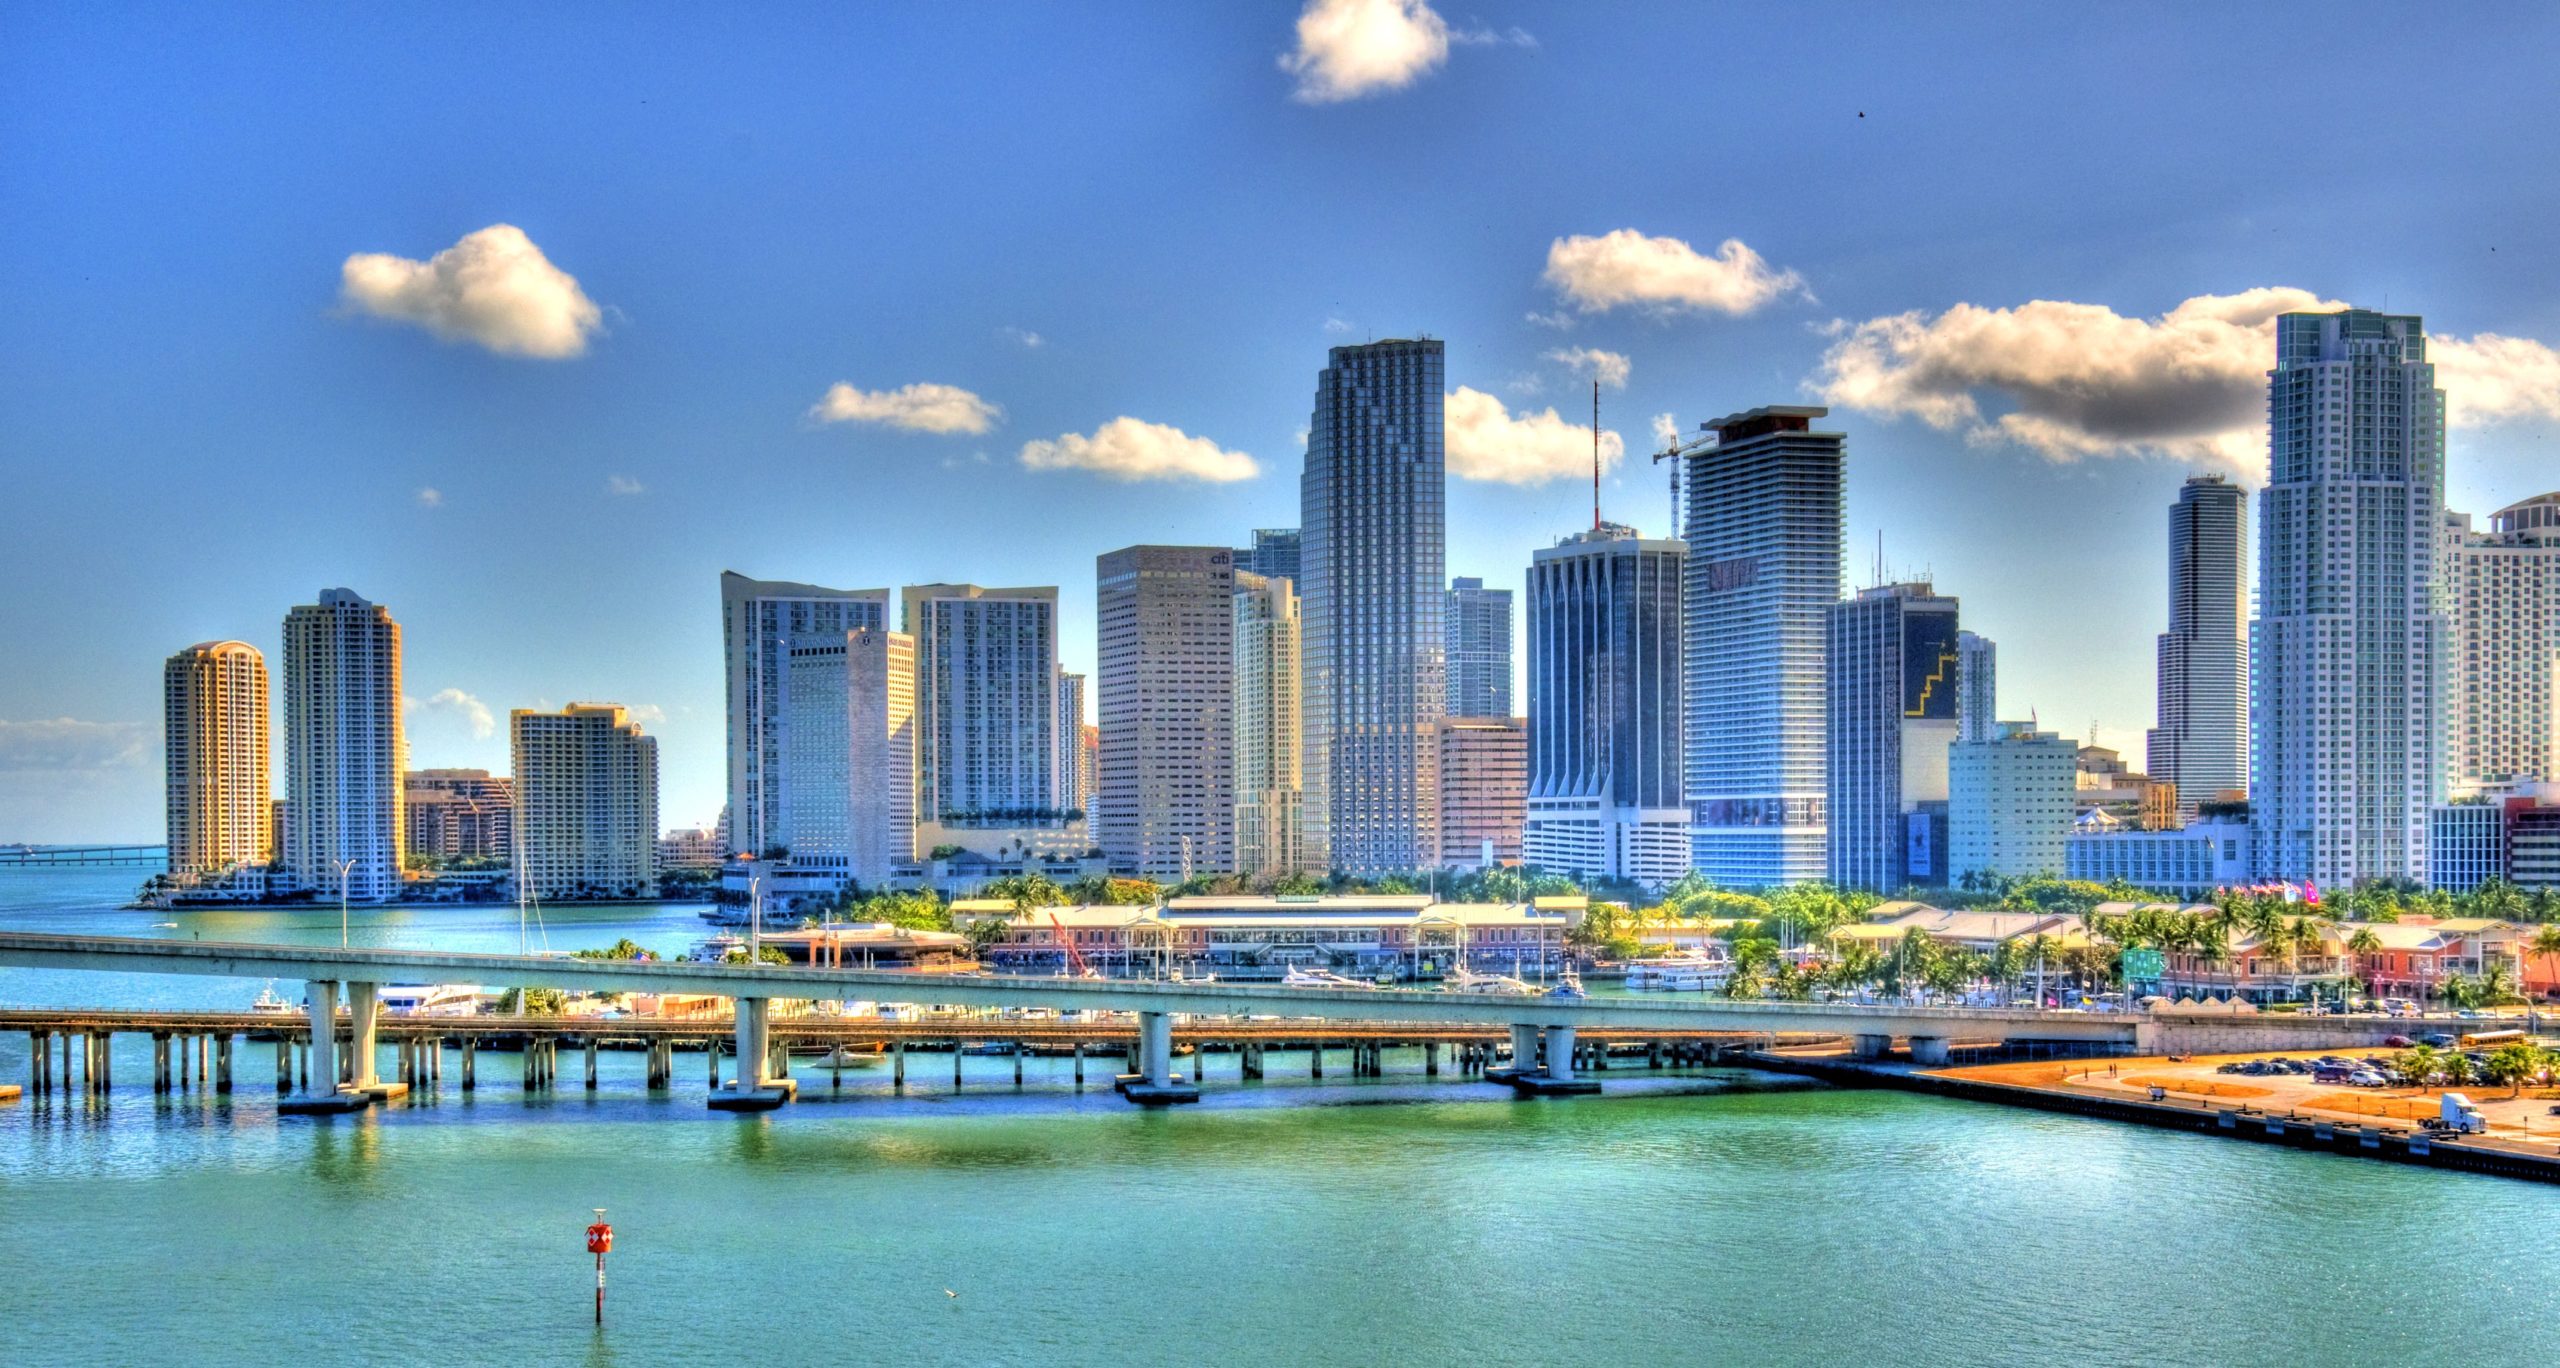 ¿Tregua? Reina la cautela entre los candidatos a alcalde de Miami-Dade por la pandemia